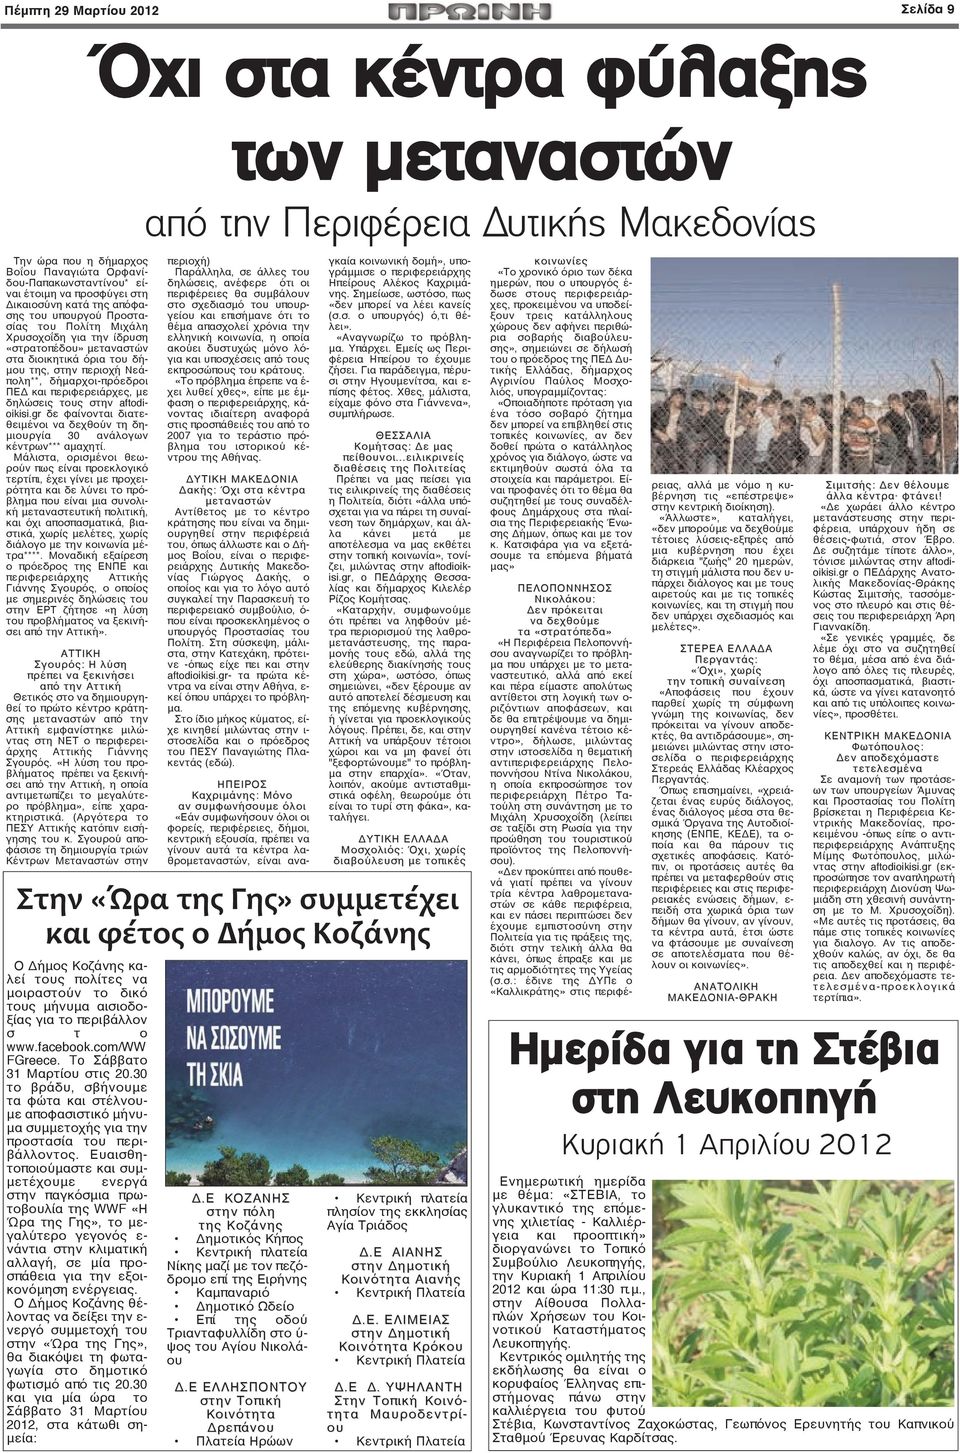 δήμαρχοι-πρόεδροι ΠΕΔ και περιφερειάρχες, με δηλώσεις τους στην aftodioikisi.gr δε φαίνονται διατεθειμένοι να δεχθούν τη δημιουργία 30 ανάλογων κέντρων αμαχητί.